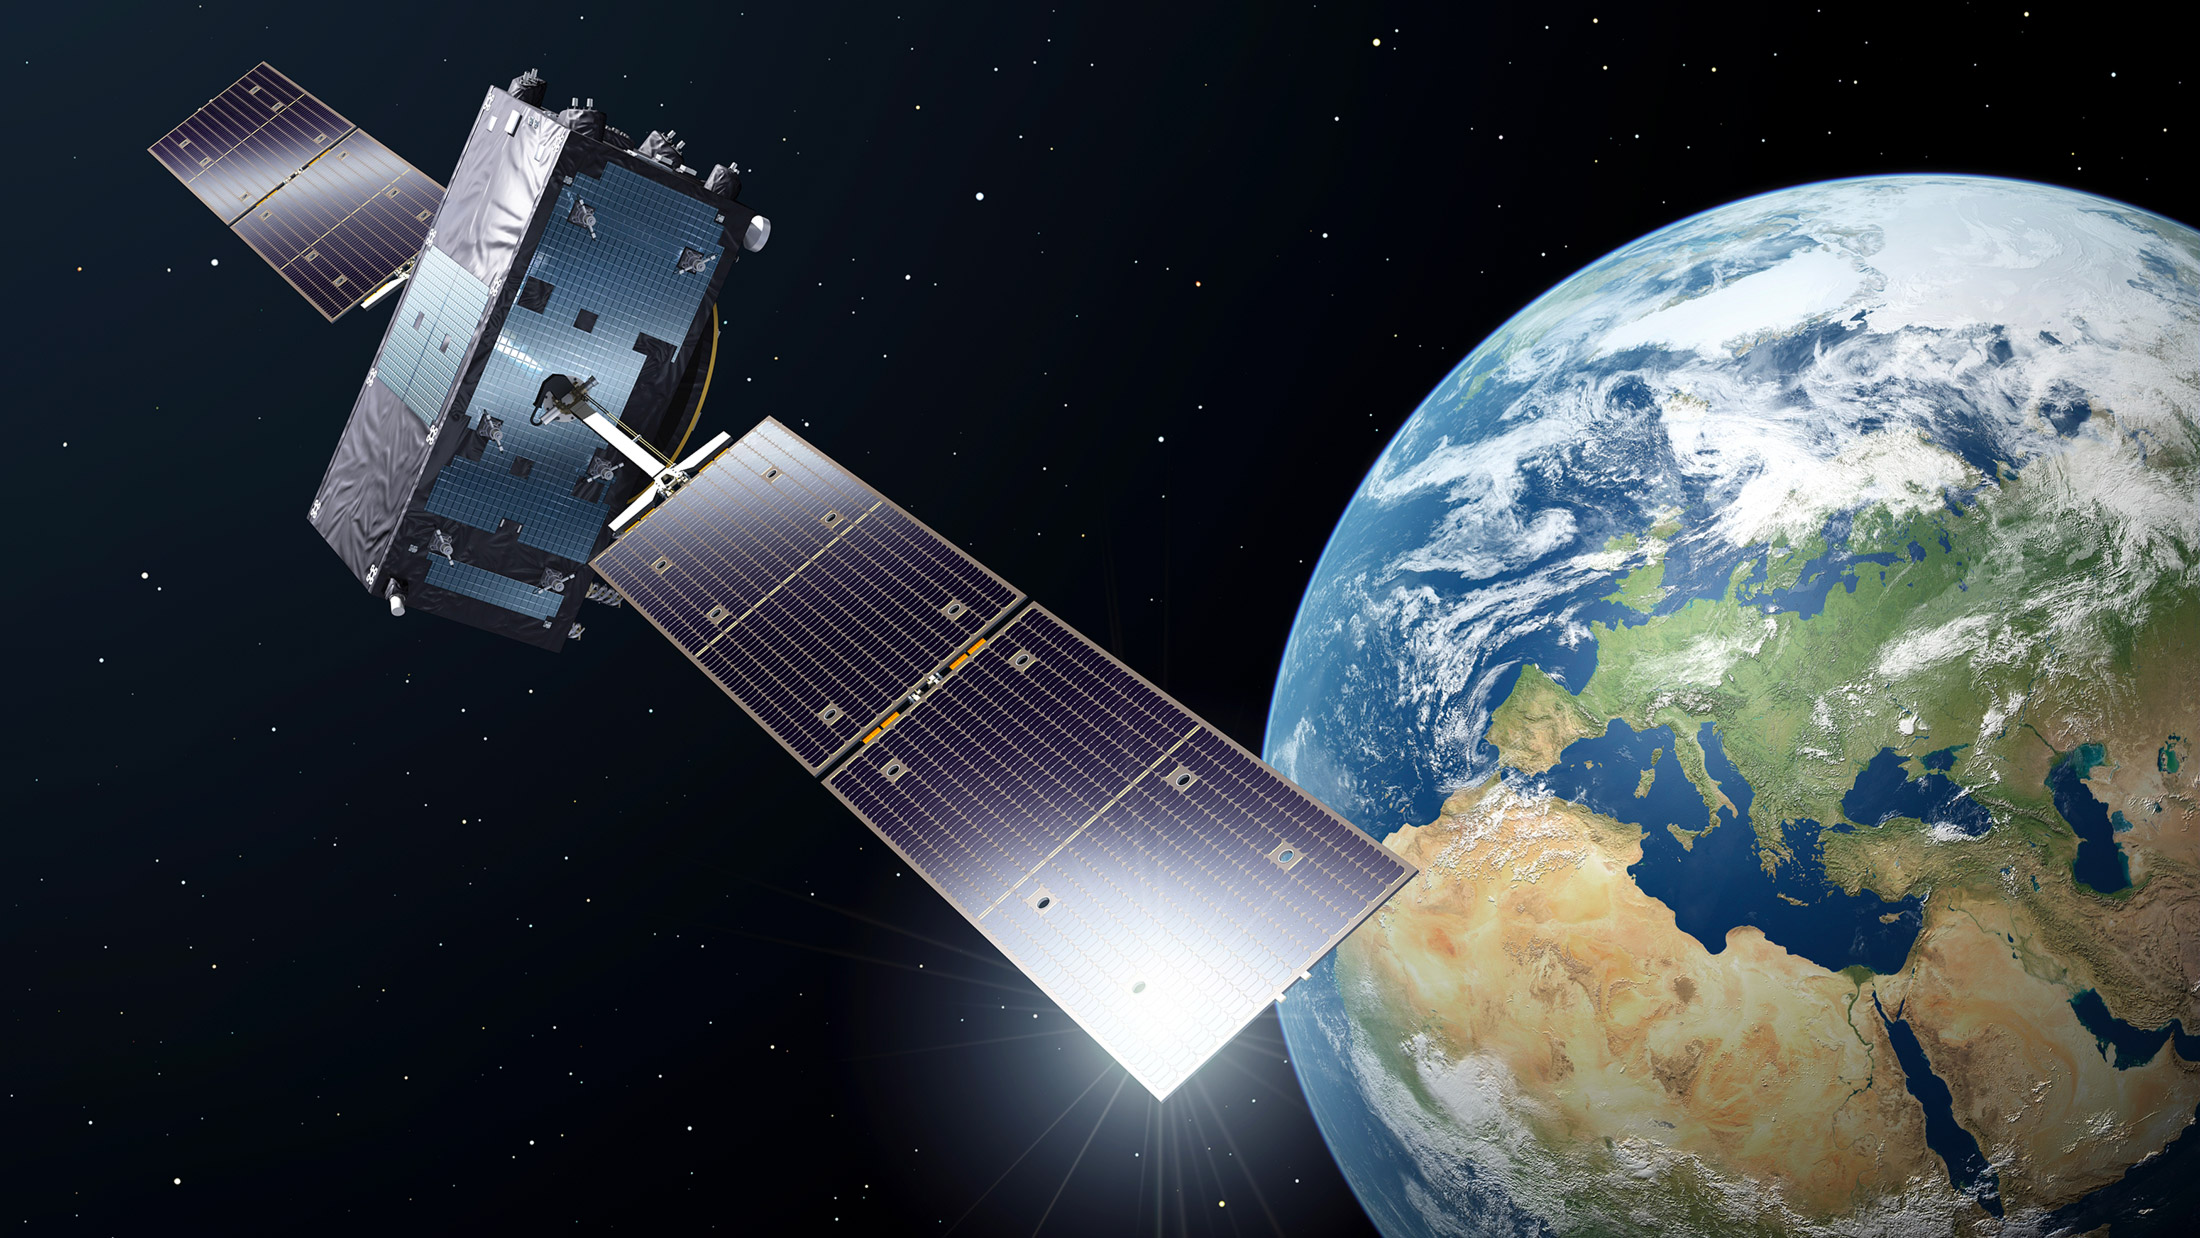 À ce jour, 22 satellites Galileo ont été déployés. Ils offrent des services initiaux depuis le 15 décembre 2016 et sont aujourd’hui utilisés par plus de 100 millions de terminaux commerciaux. Le 25 juillet, Arianespace en lancera quatre de plus.
© ESA, P. Caril